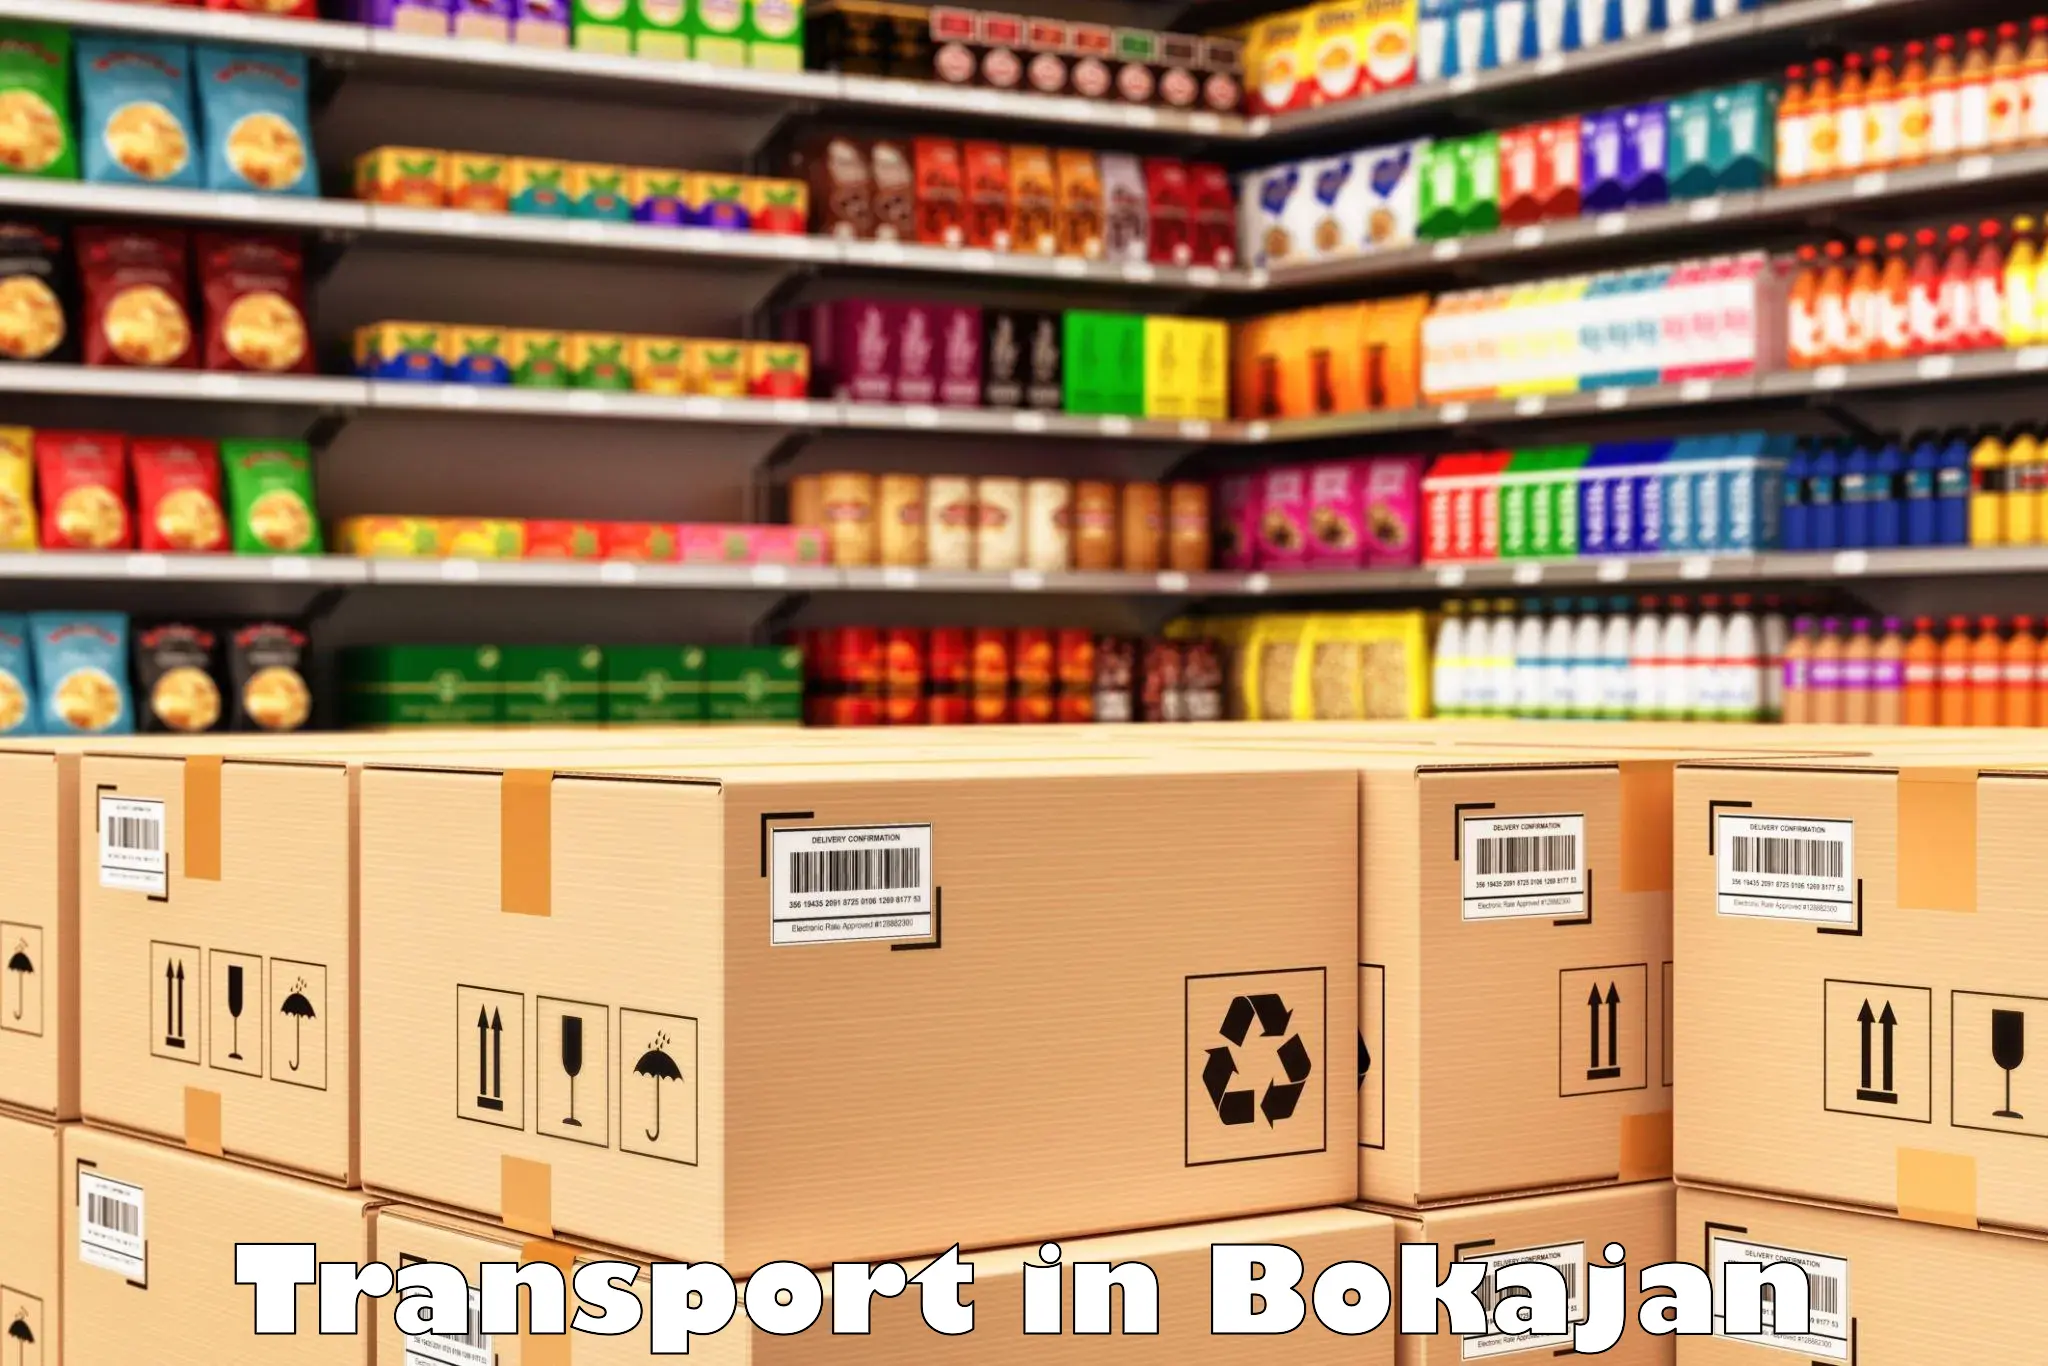 Goods delivery service in Bokajan